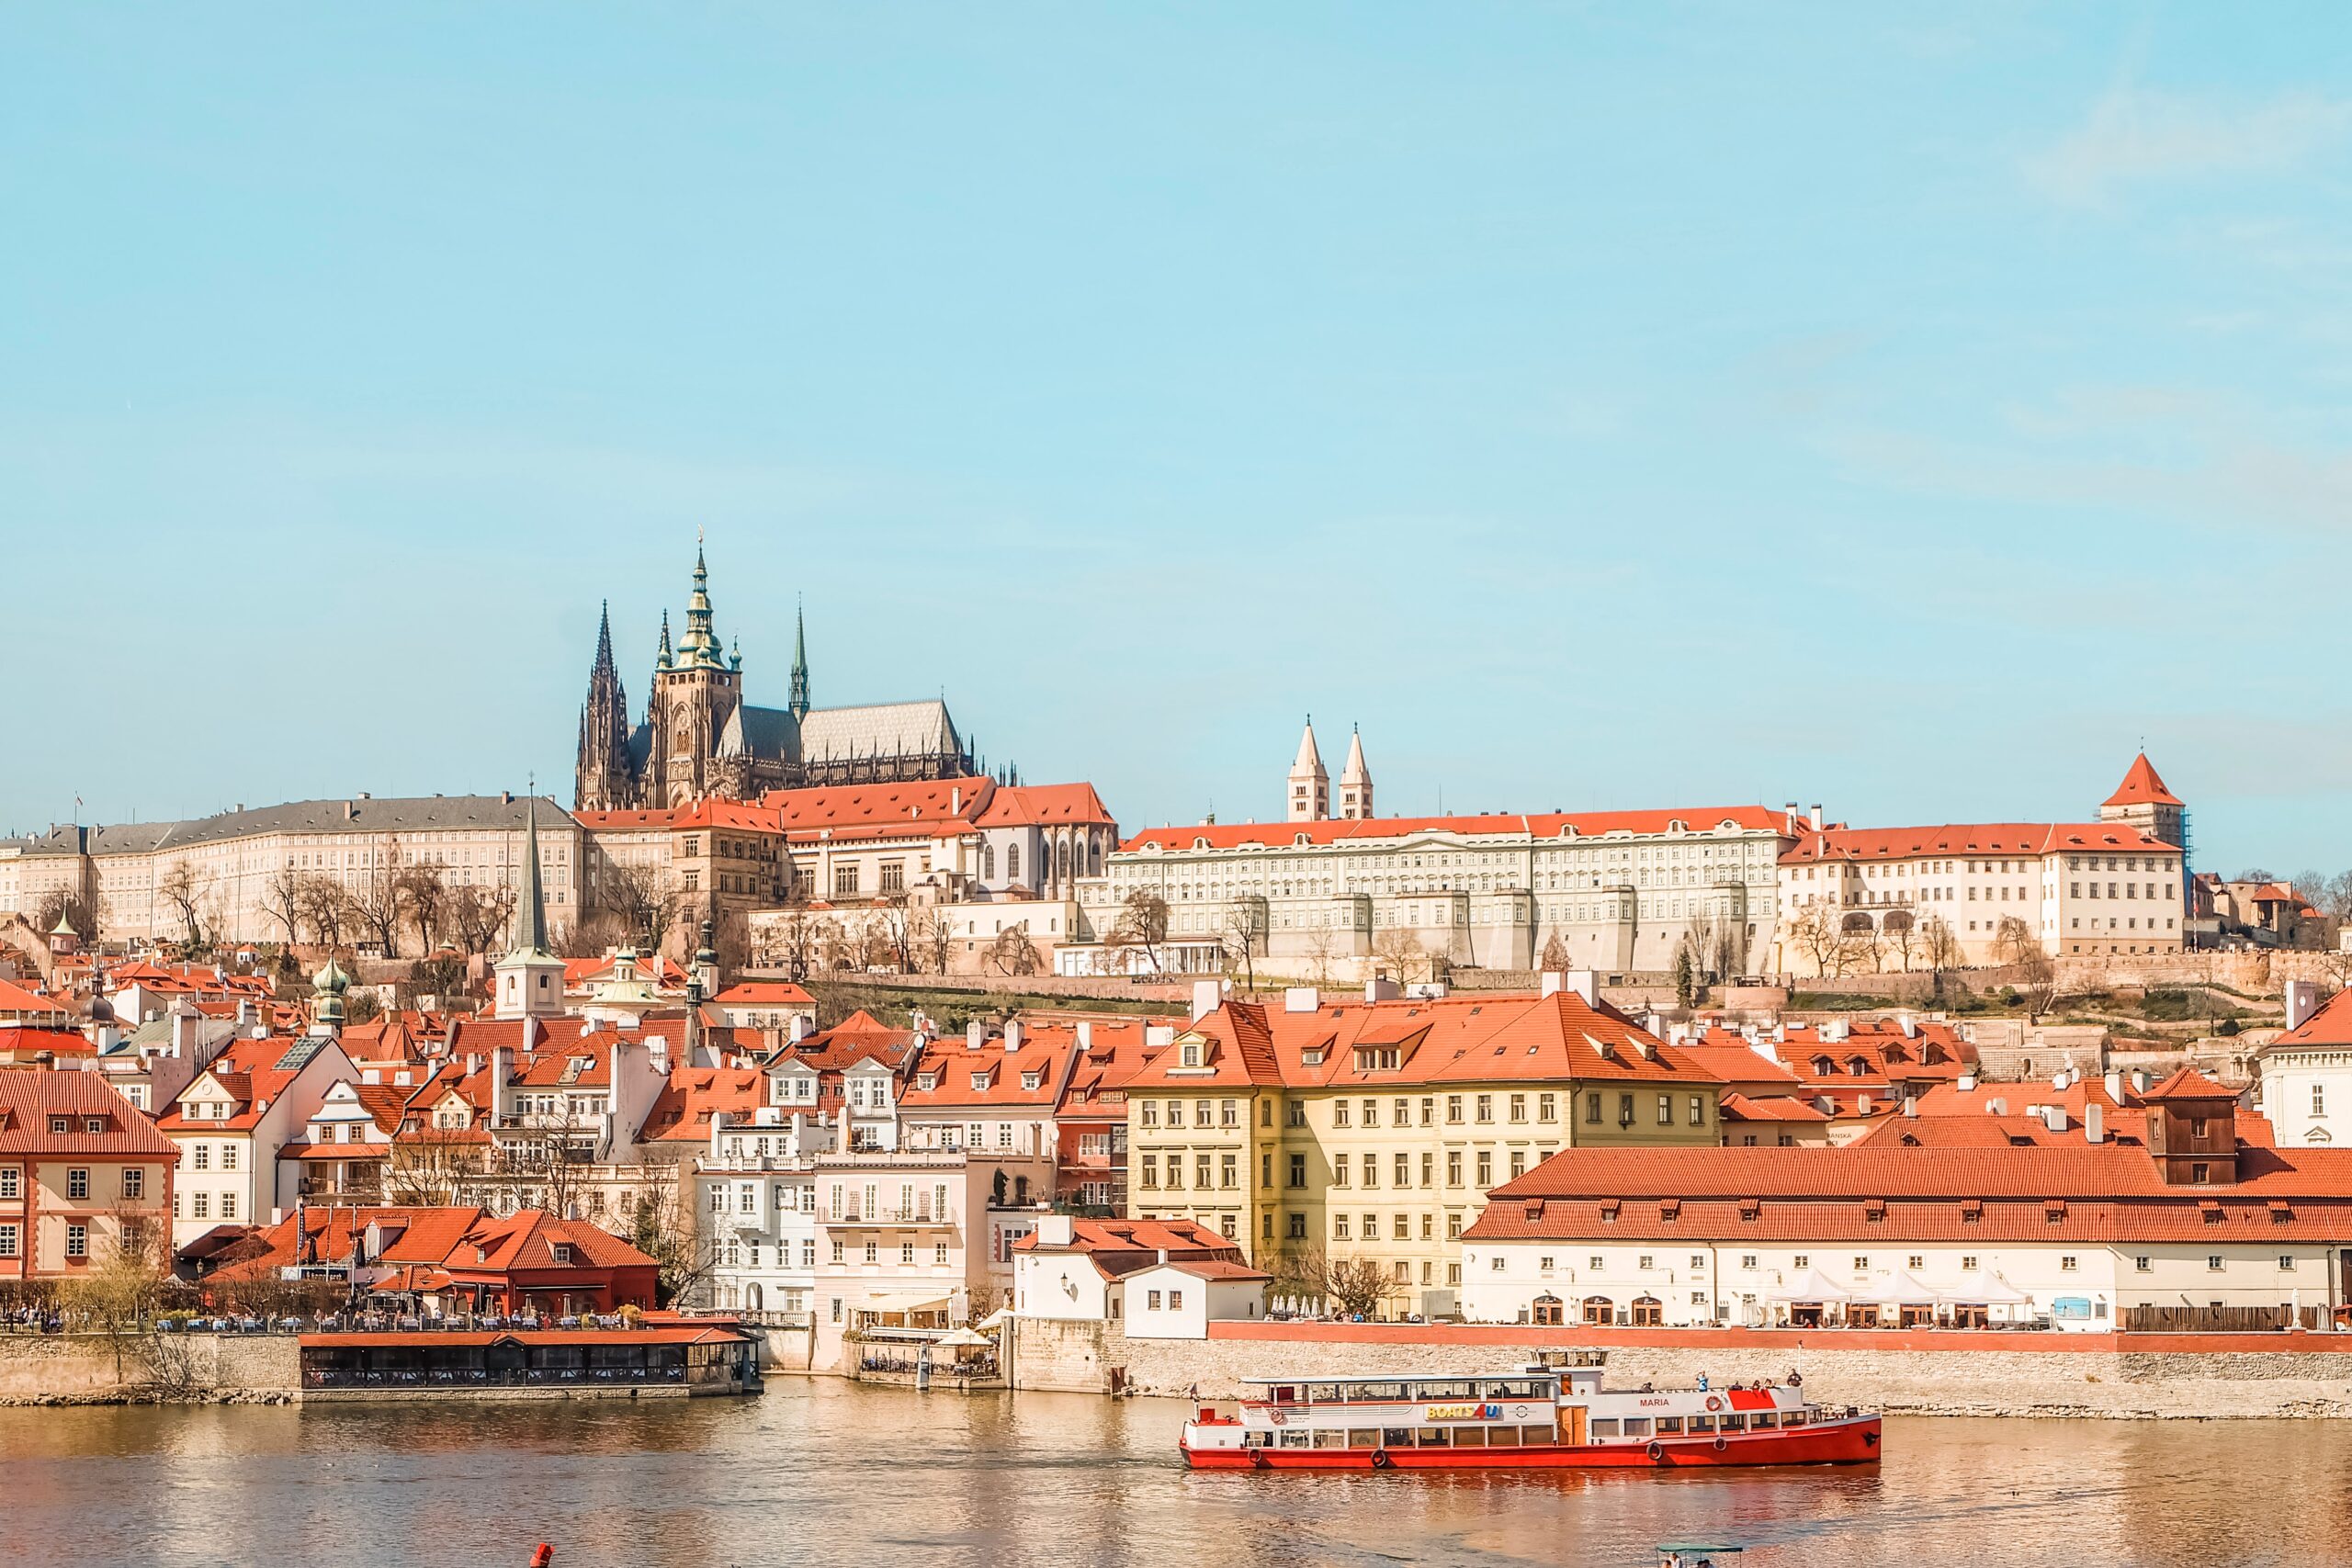 Prague Castle shot from across the River Vltava